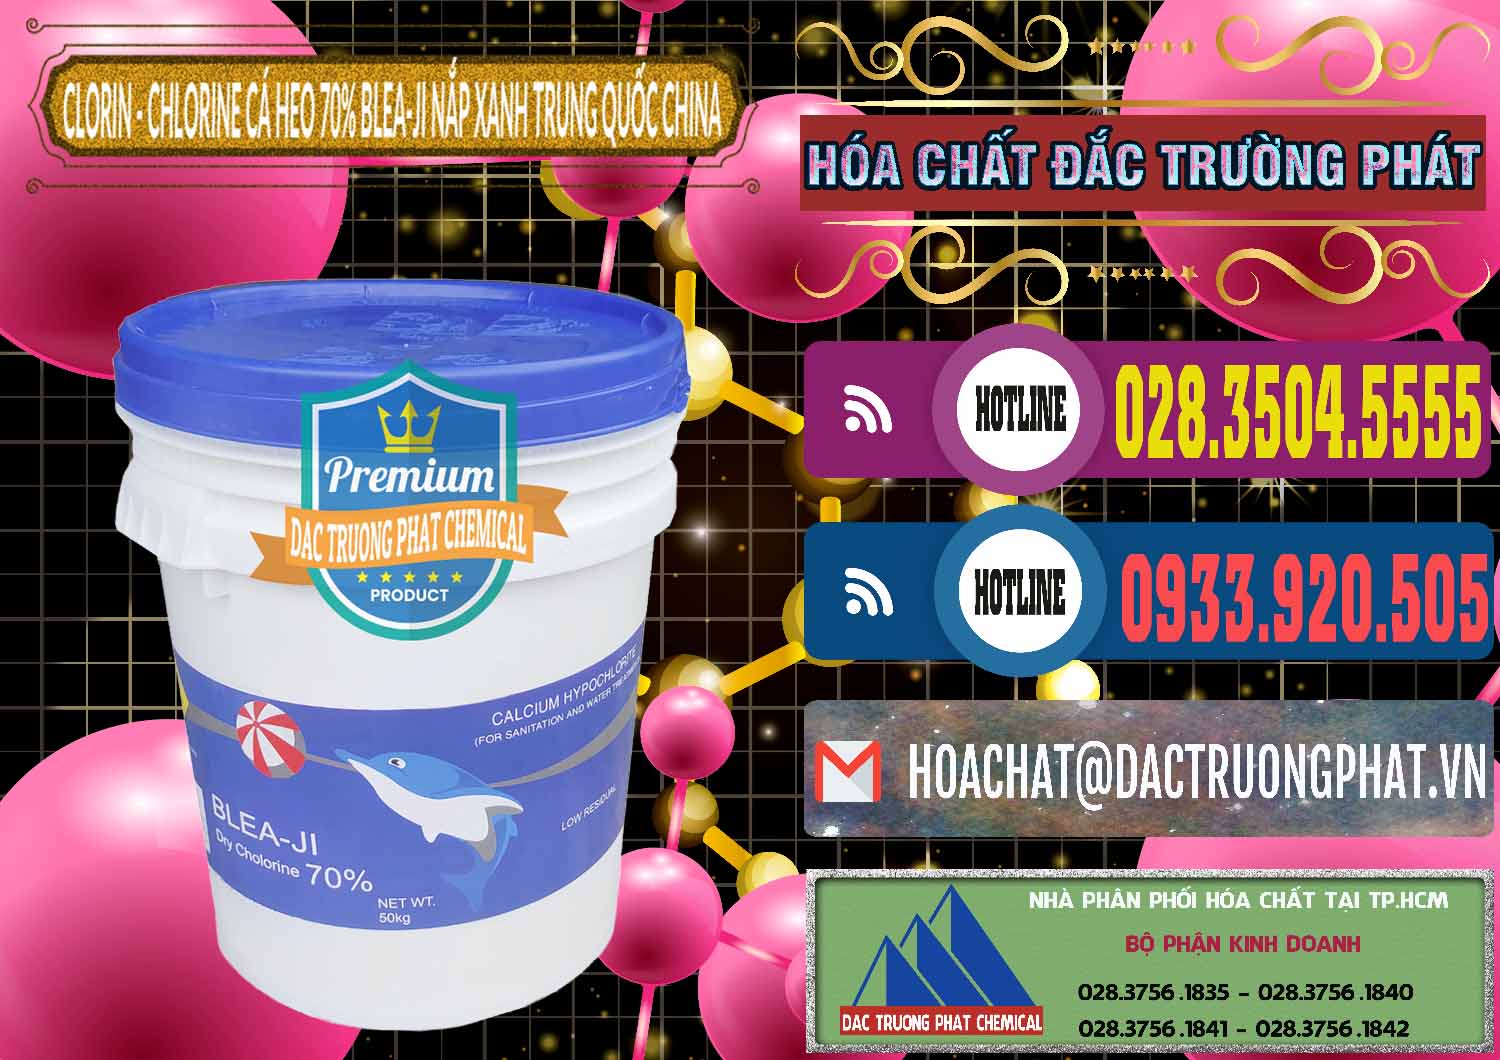 Chuyên nhập khẩu - bán Clorin - Chlorine Cá Heo 70% Cá Heo Blea-Ji Thùng Tròn Nắp Xanh Trung Quốc China - 0208 - Cung cấp và phân phối hóa chất tại TP.HCM - muabanhoachat.com.vn